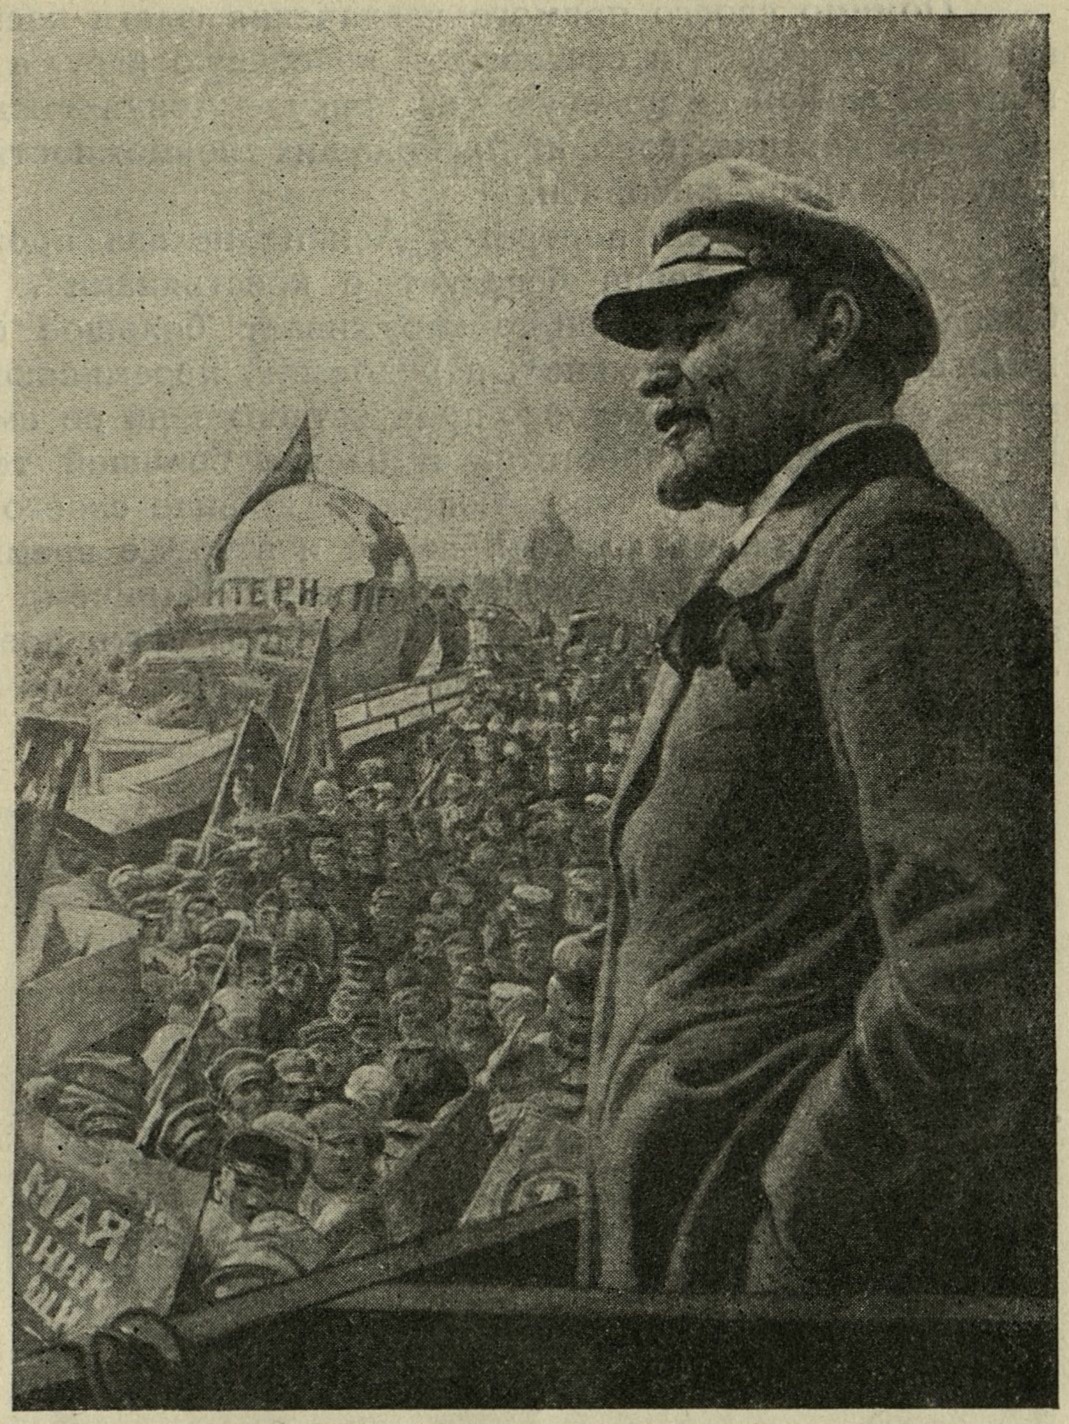 И. Бродский. Ленин на демонстрации. I. Brodski. Lénine pendant une manifestation.